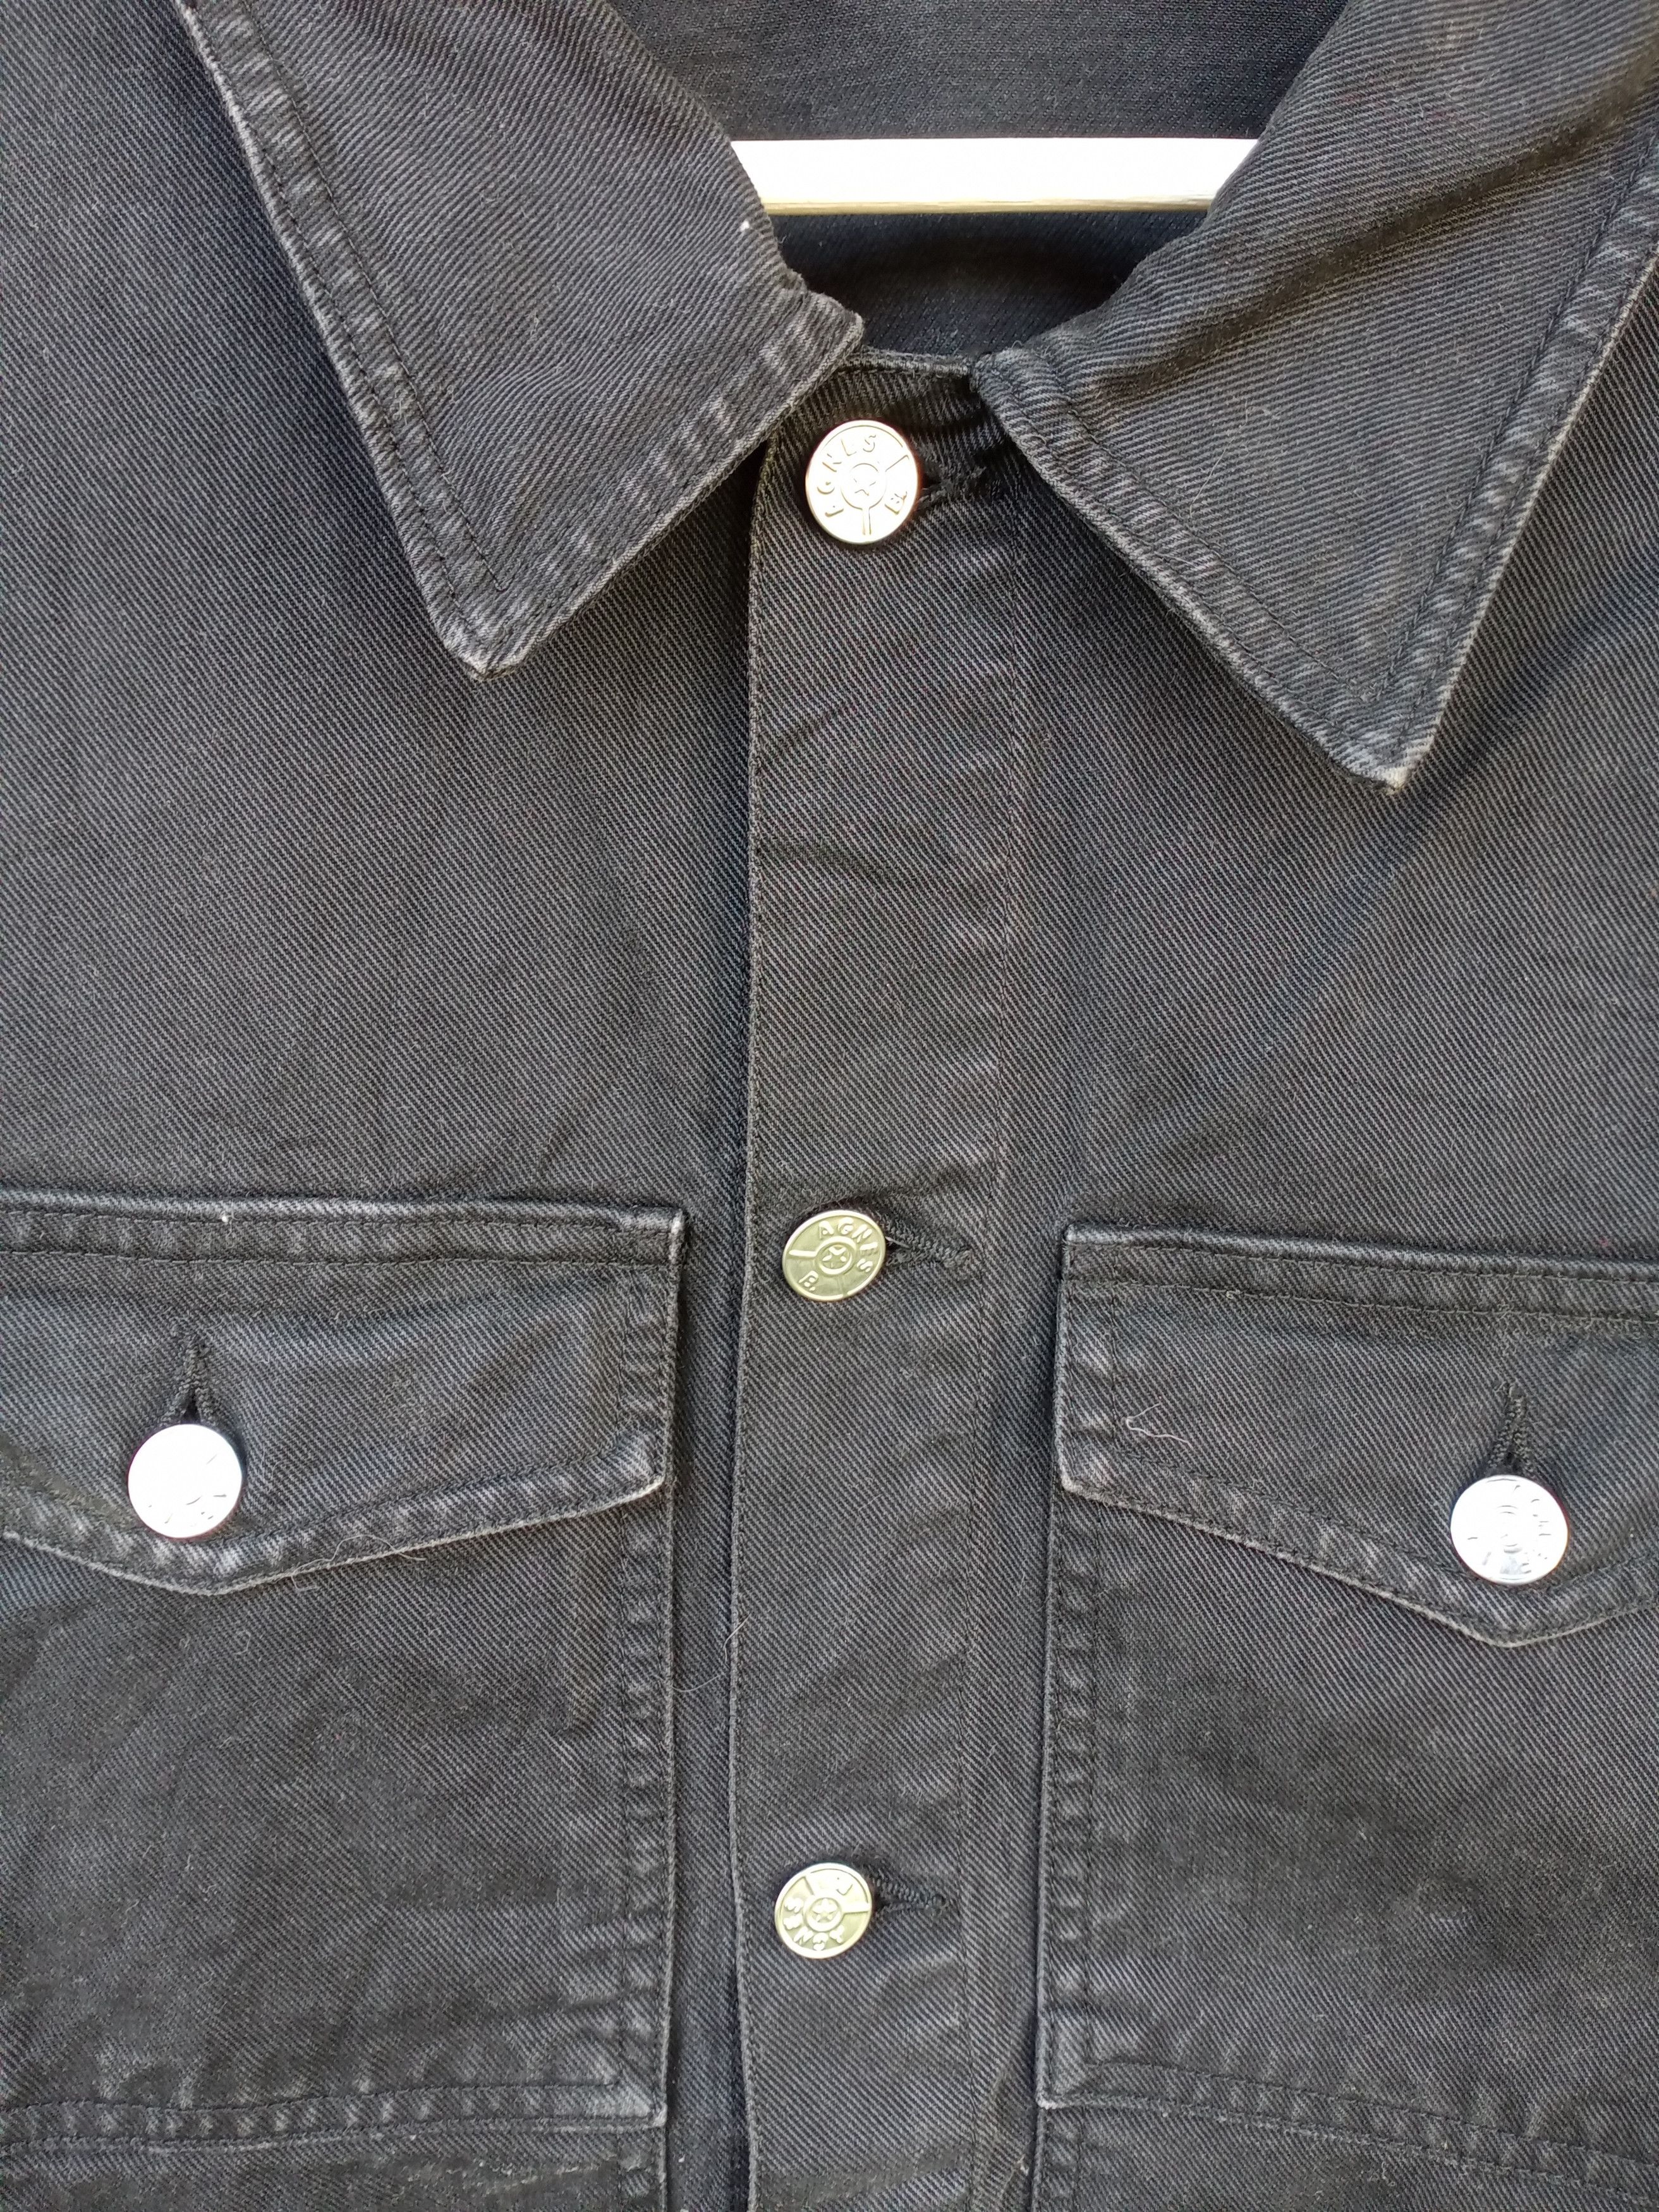 Agnes B. Agnes B Homme Paris Black Jeans Jacket Size 2 Size US S / EU 44-46 / 1 - 8 Preview